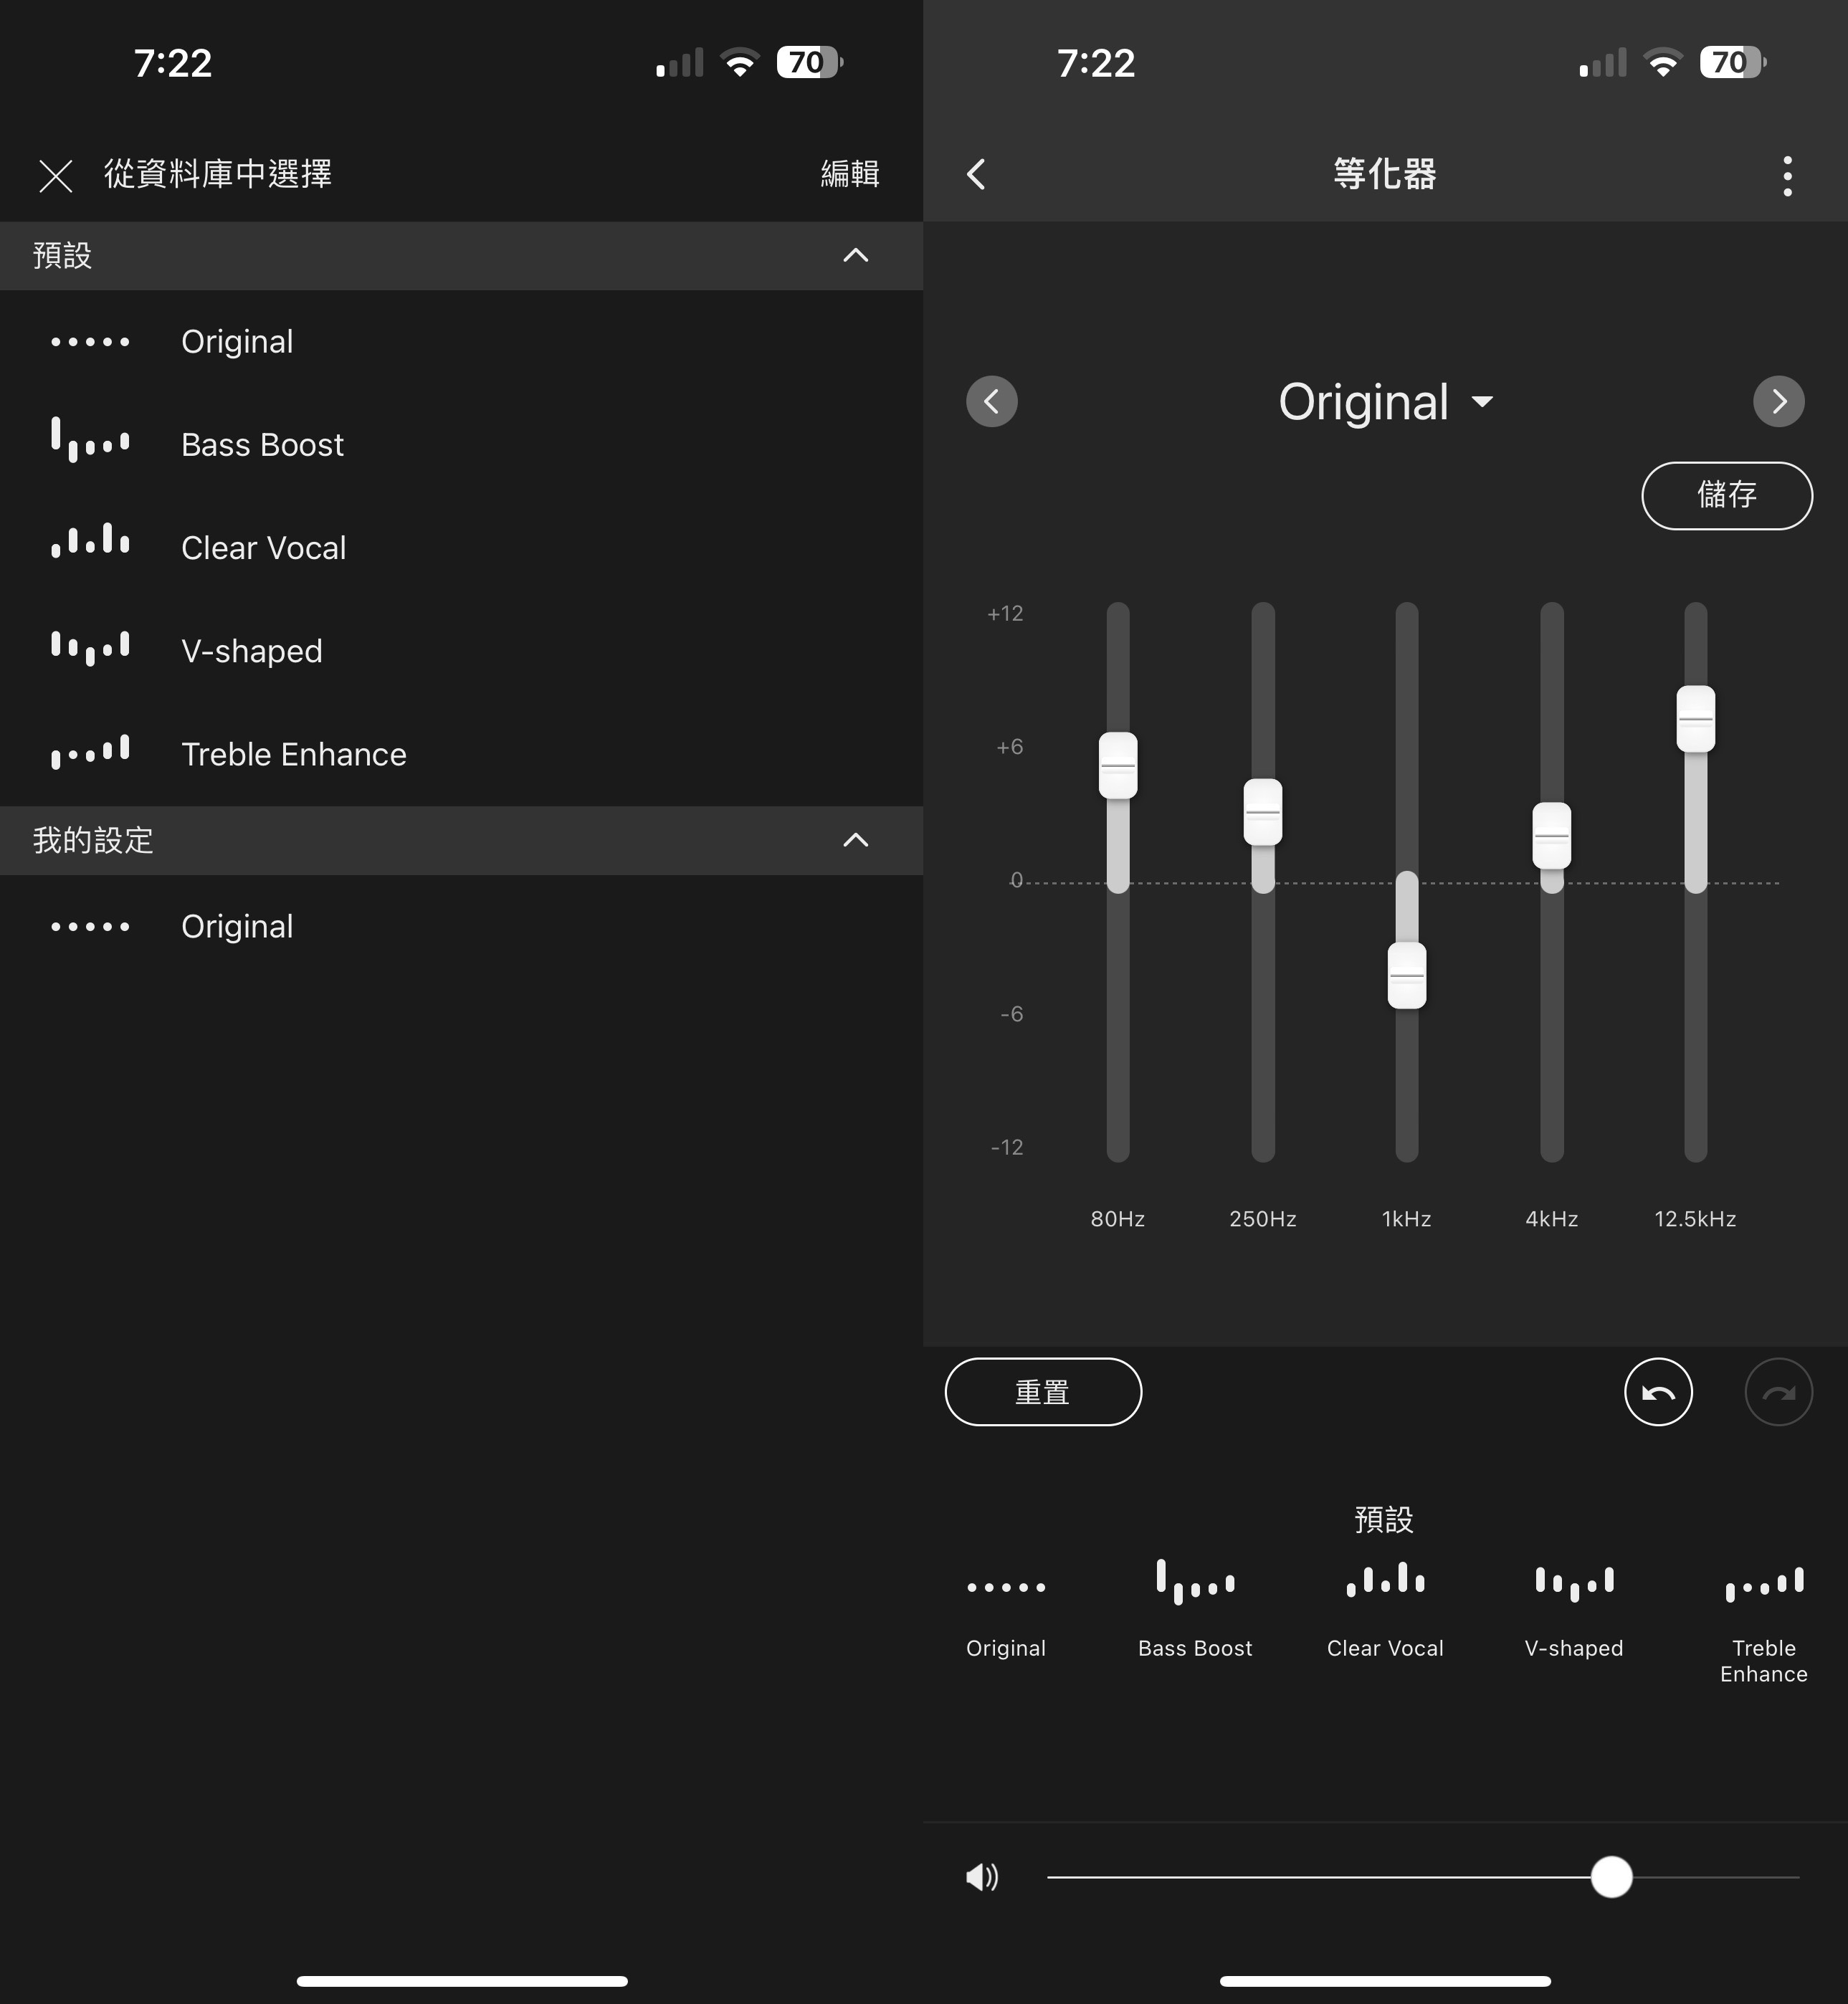 為了讓消費者聆聽時能以多樣化的聲音風格對應到不同類型的音樂，Connect App 中的「等化器」選項也提供預設的五組 EQ 模式，當然使用者也能自行調整 80Hz、250Hz、1kHz、4kHz、12.5kHz 五個頻率區間的音頻，調整到自己偏好的聲音特性。